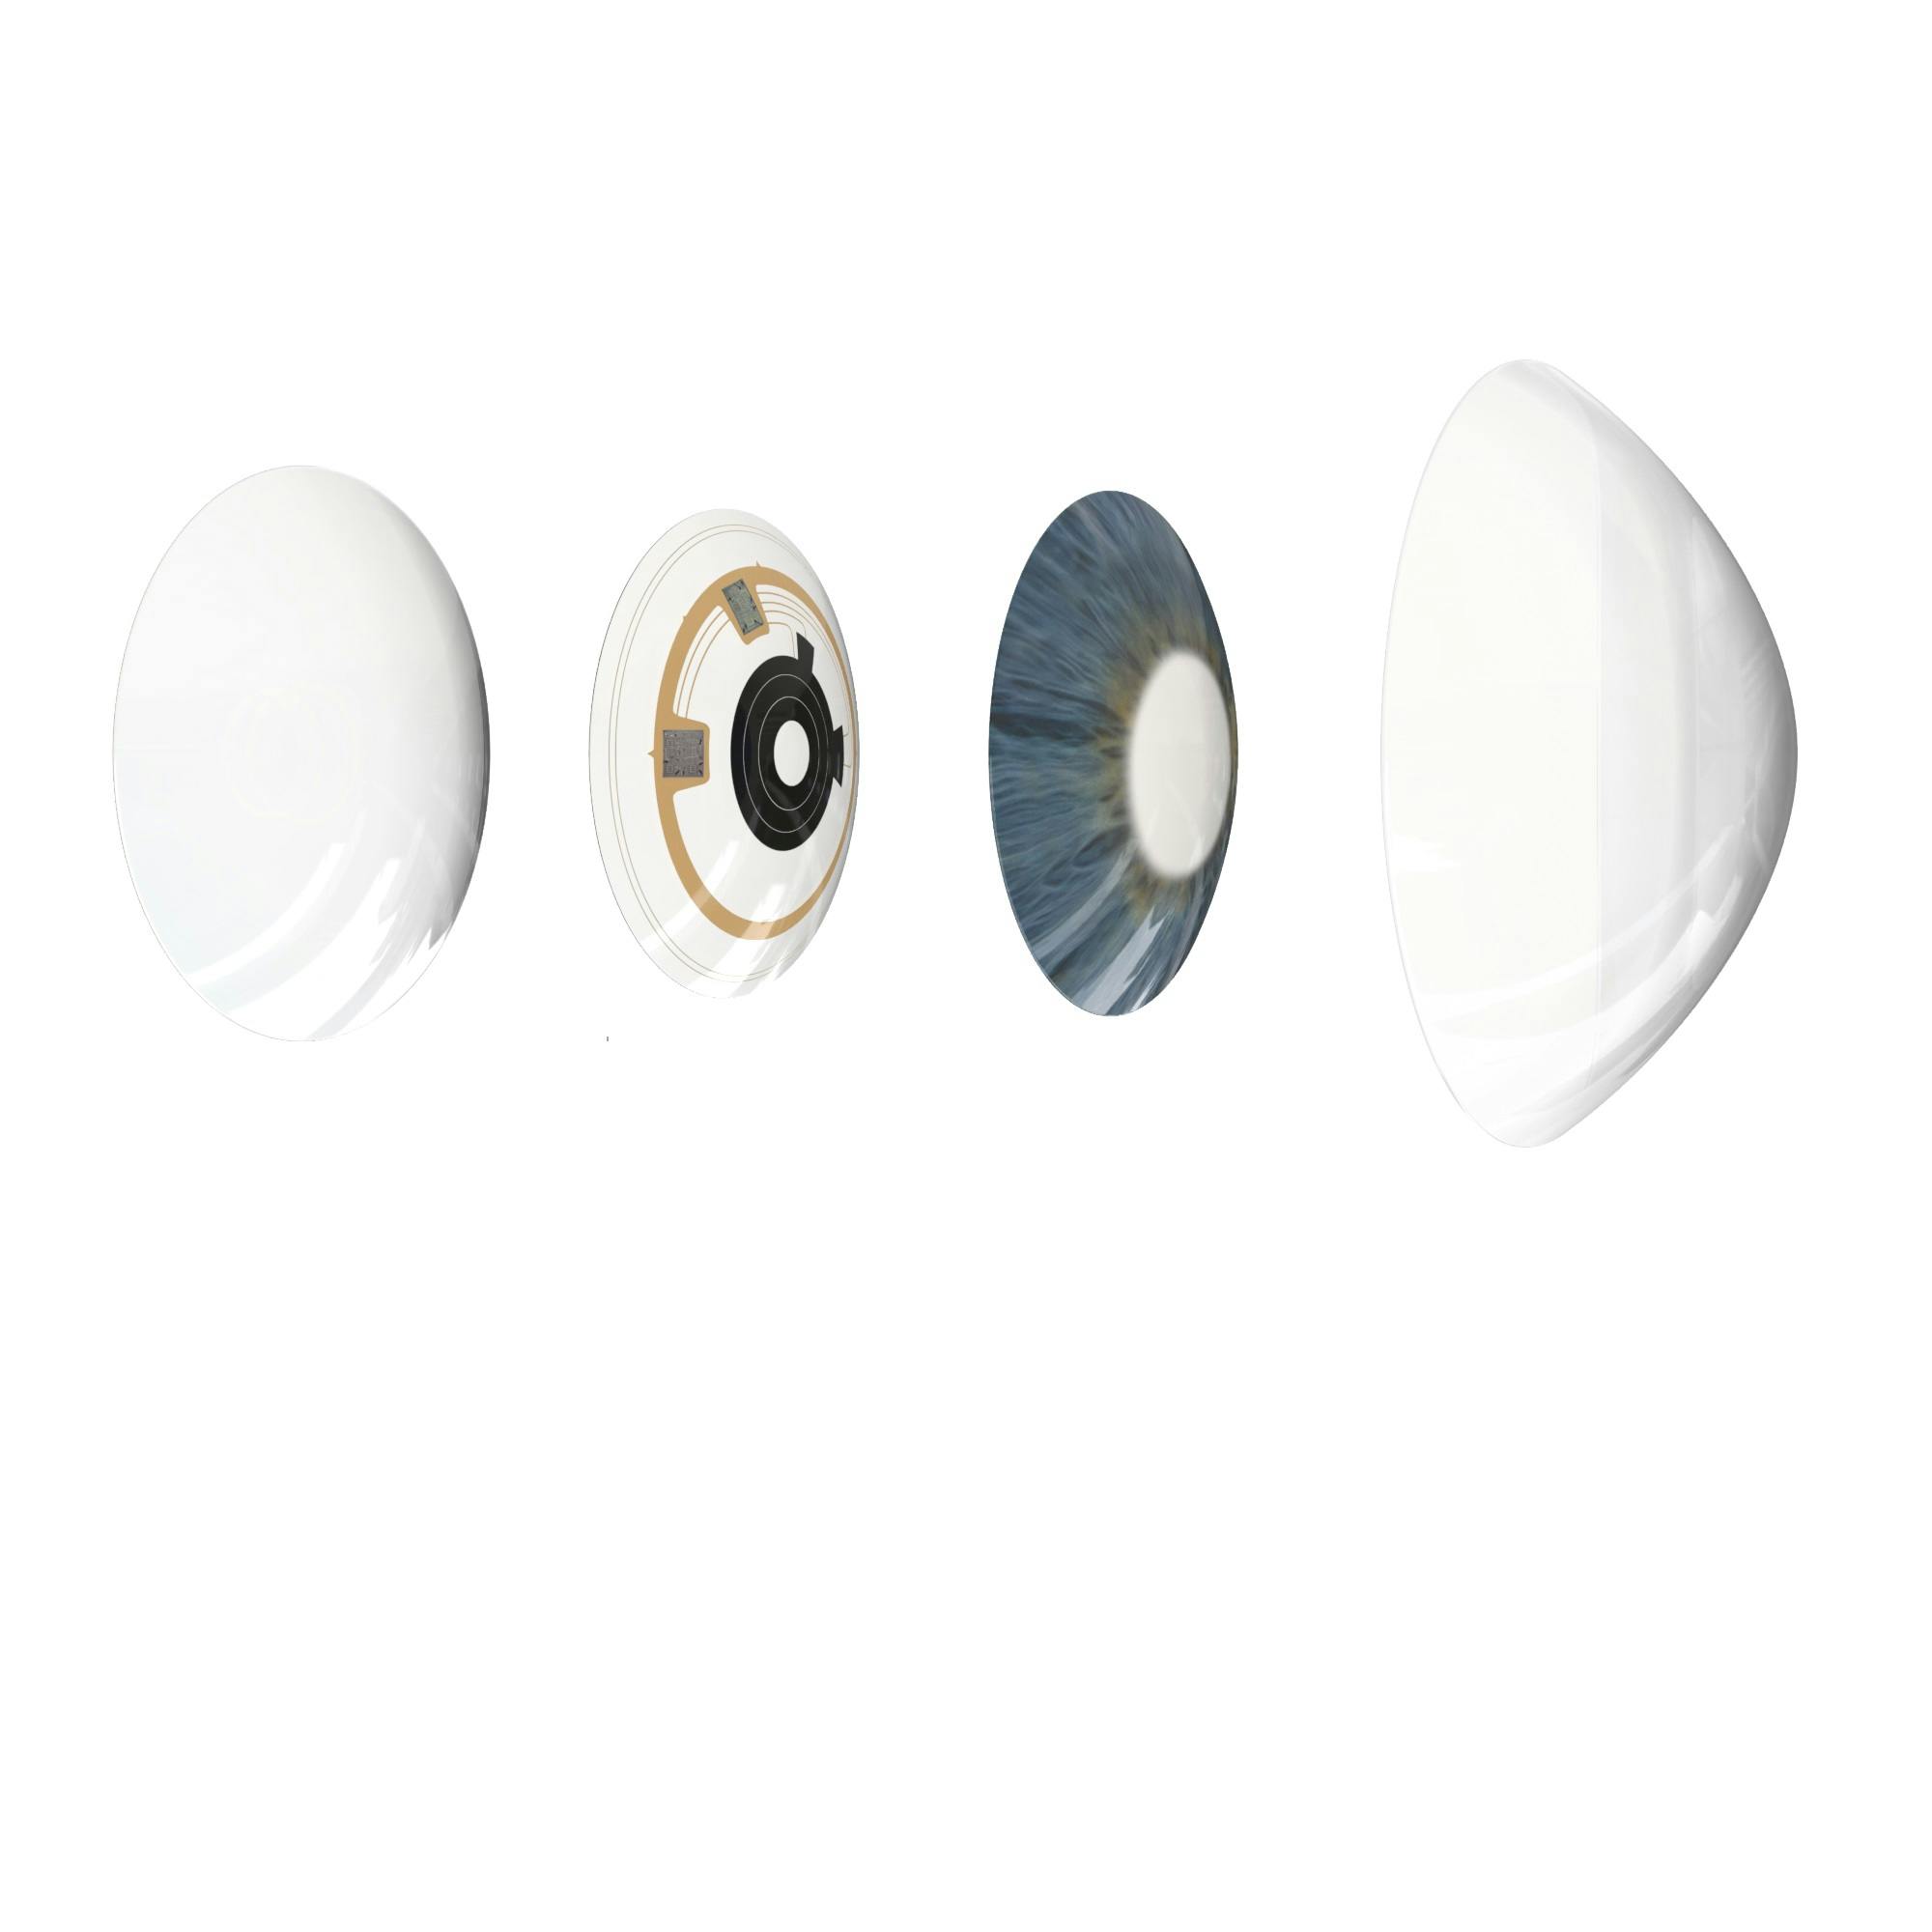 Smart contact lens Azalea